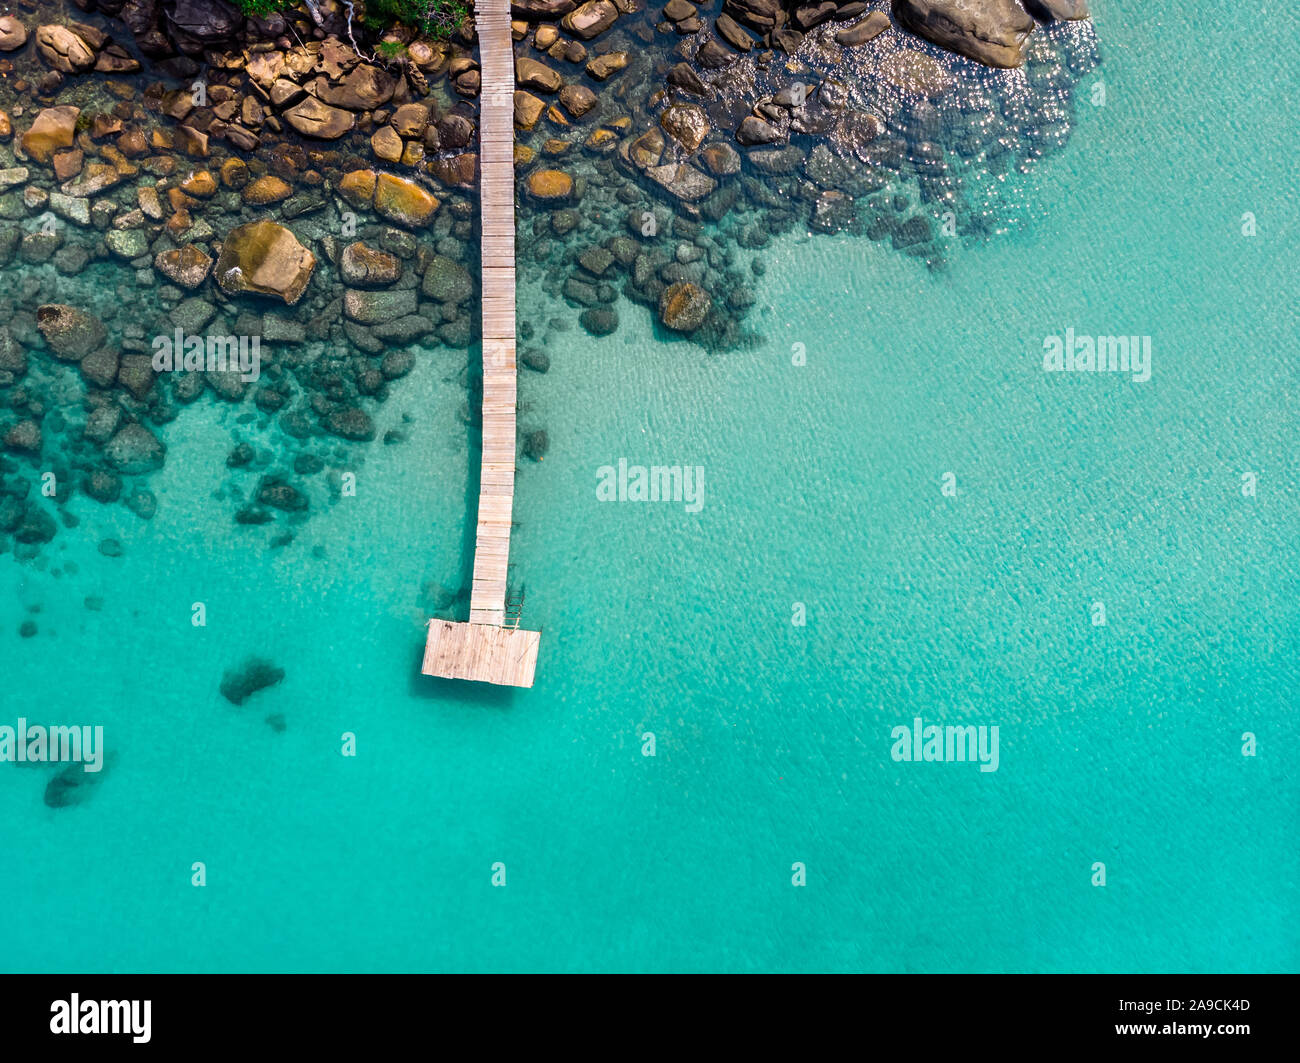 Isola vista aerea da fuco, spiaggia vacanza vacanze destinazione, turchese trasparente di acqua di mare con il molo di legno e rocce, bella tropical para Foto Stock